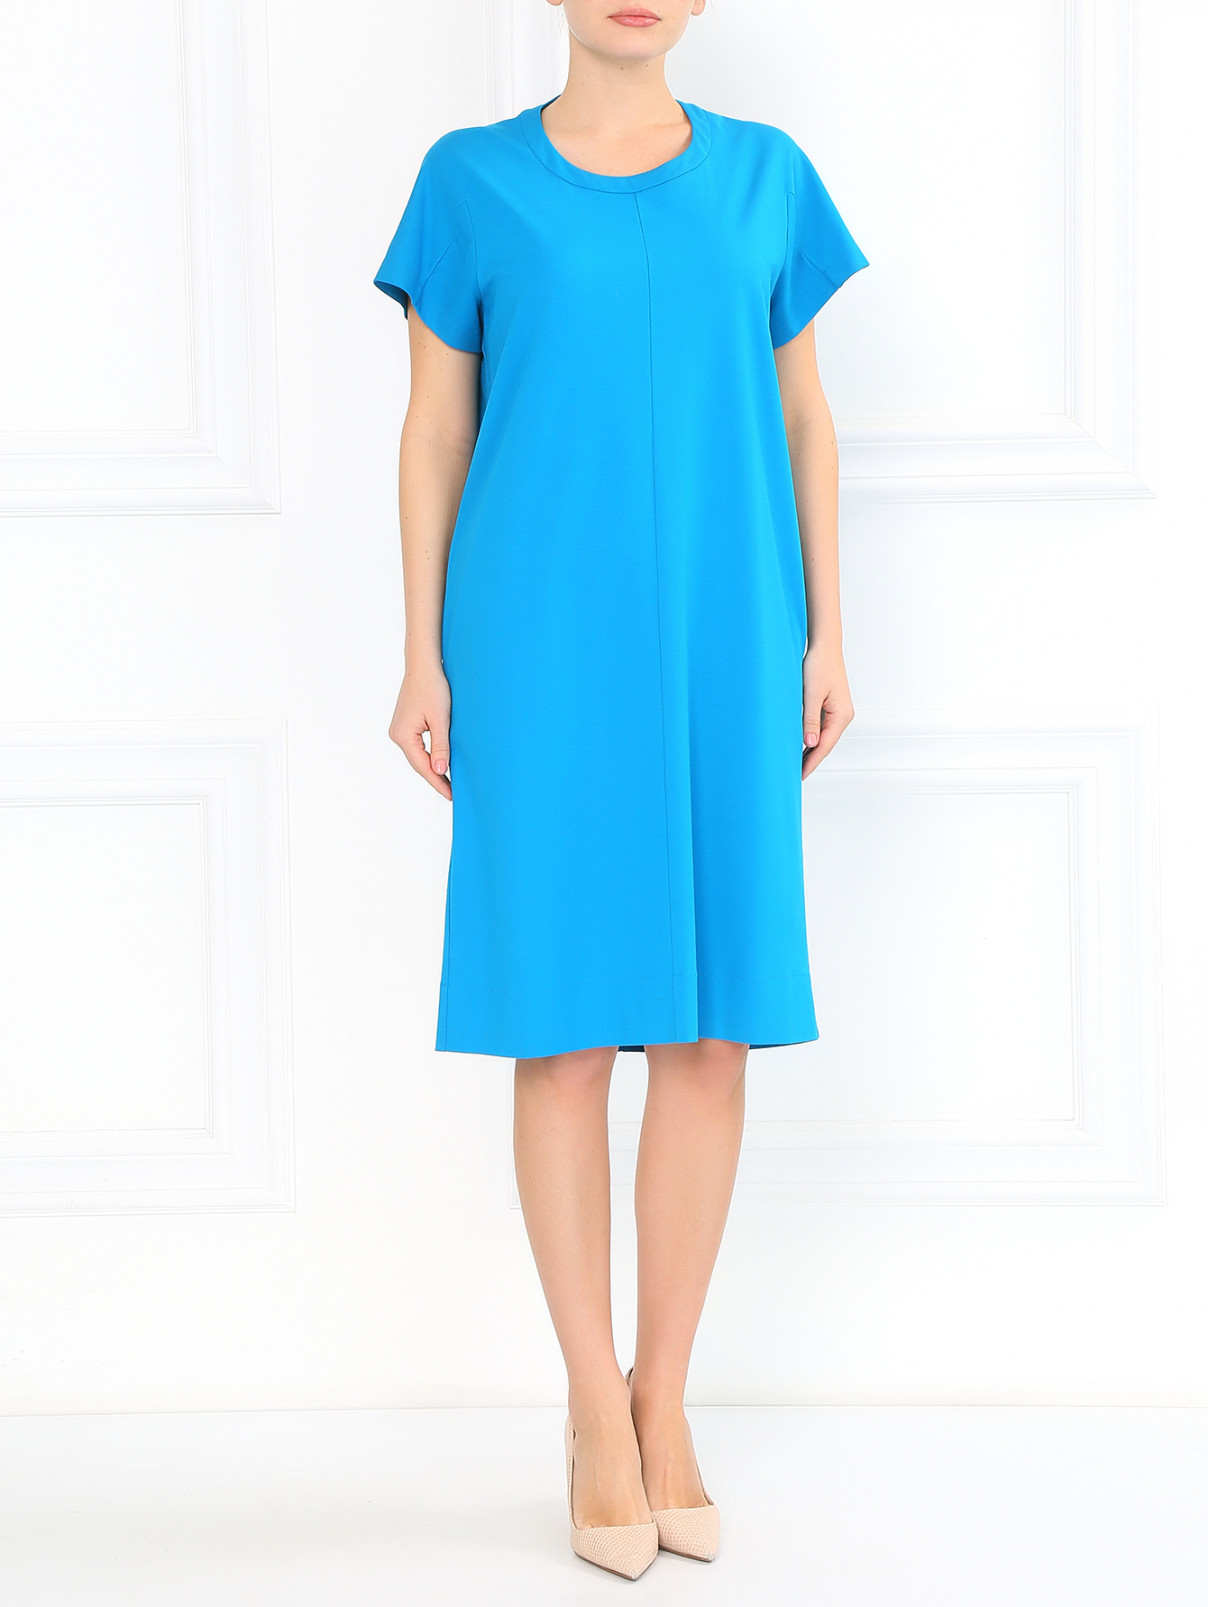 Платье из хлопка с боковыми карманами Jil Sander  –  Модель Общий вид  – Цвет:  Синий